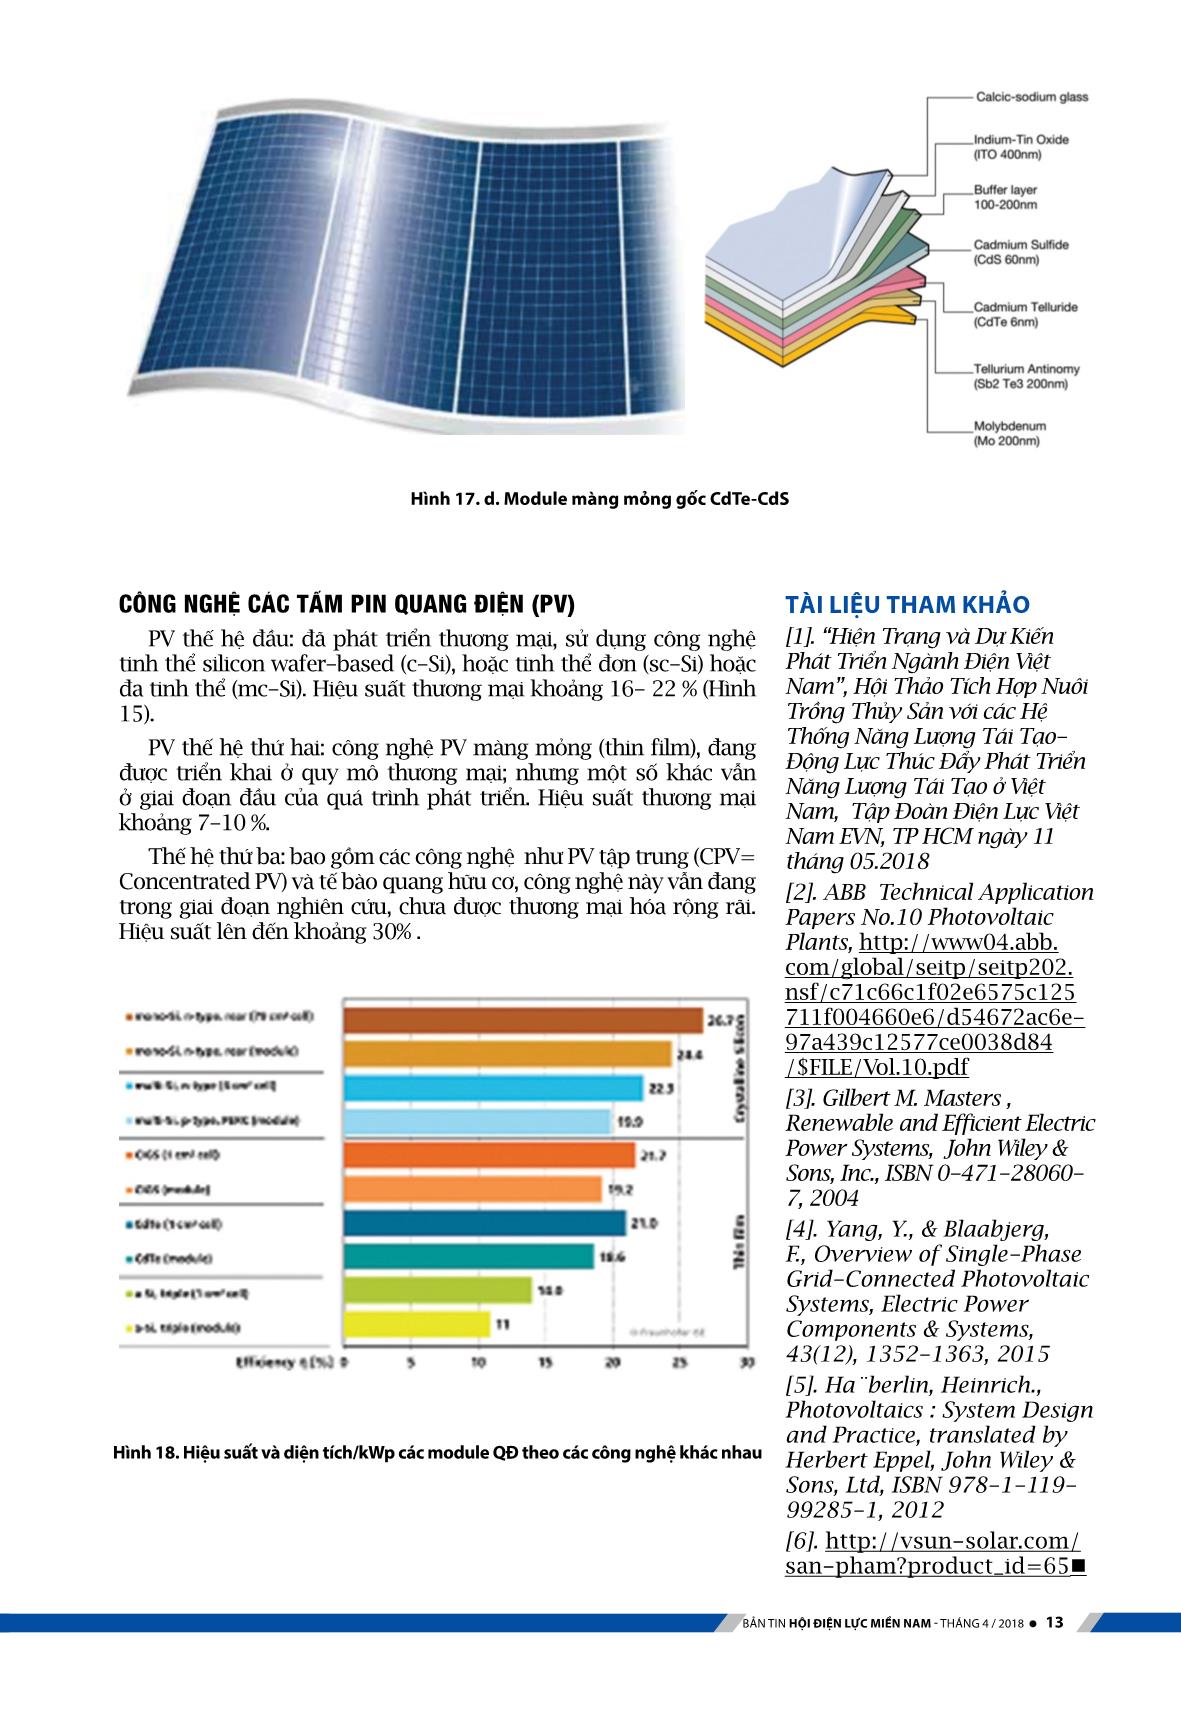 Kỹ thuật hệ thống điện mặt trời với công nghệ quang điện (Phần 1) trang 9